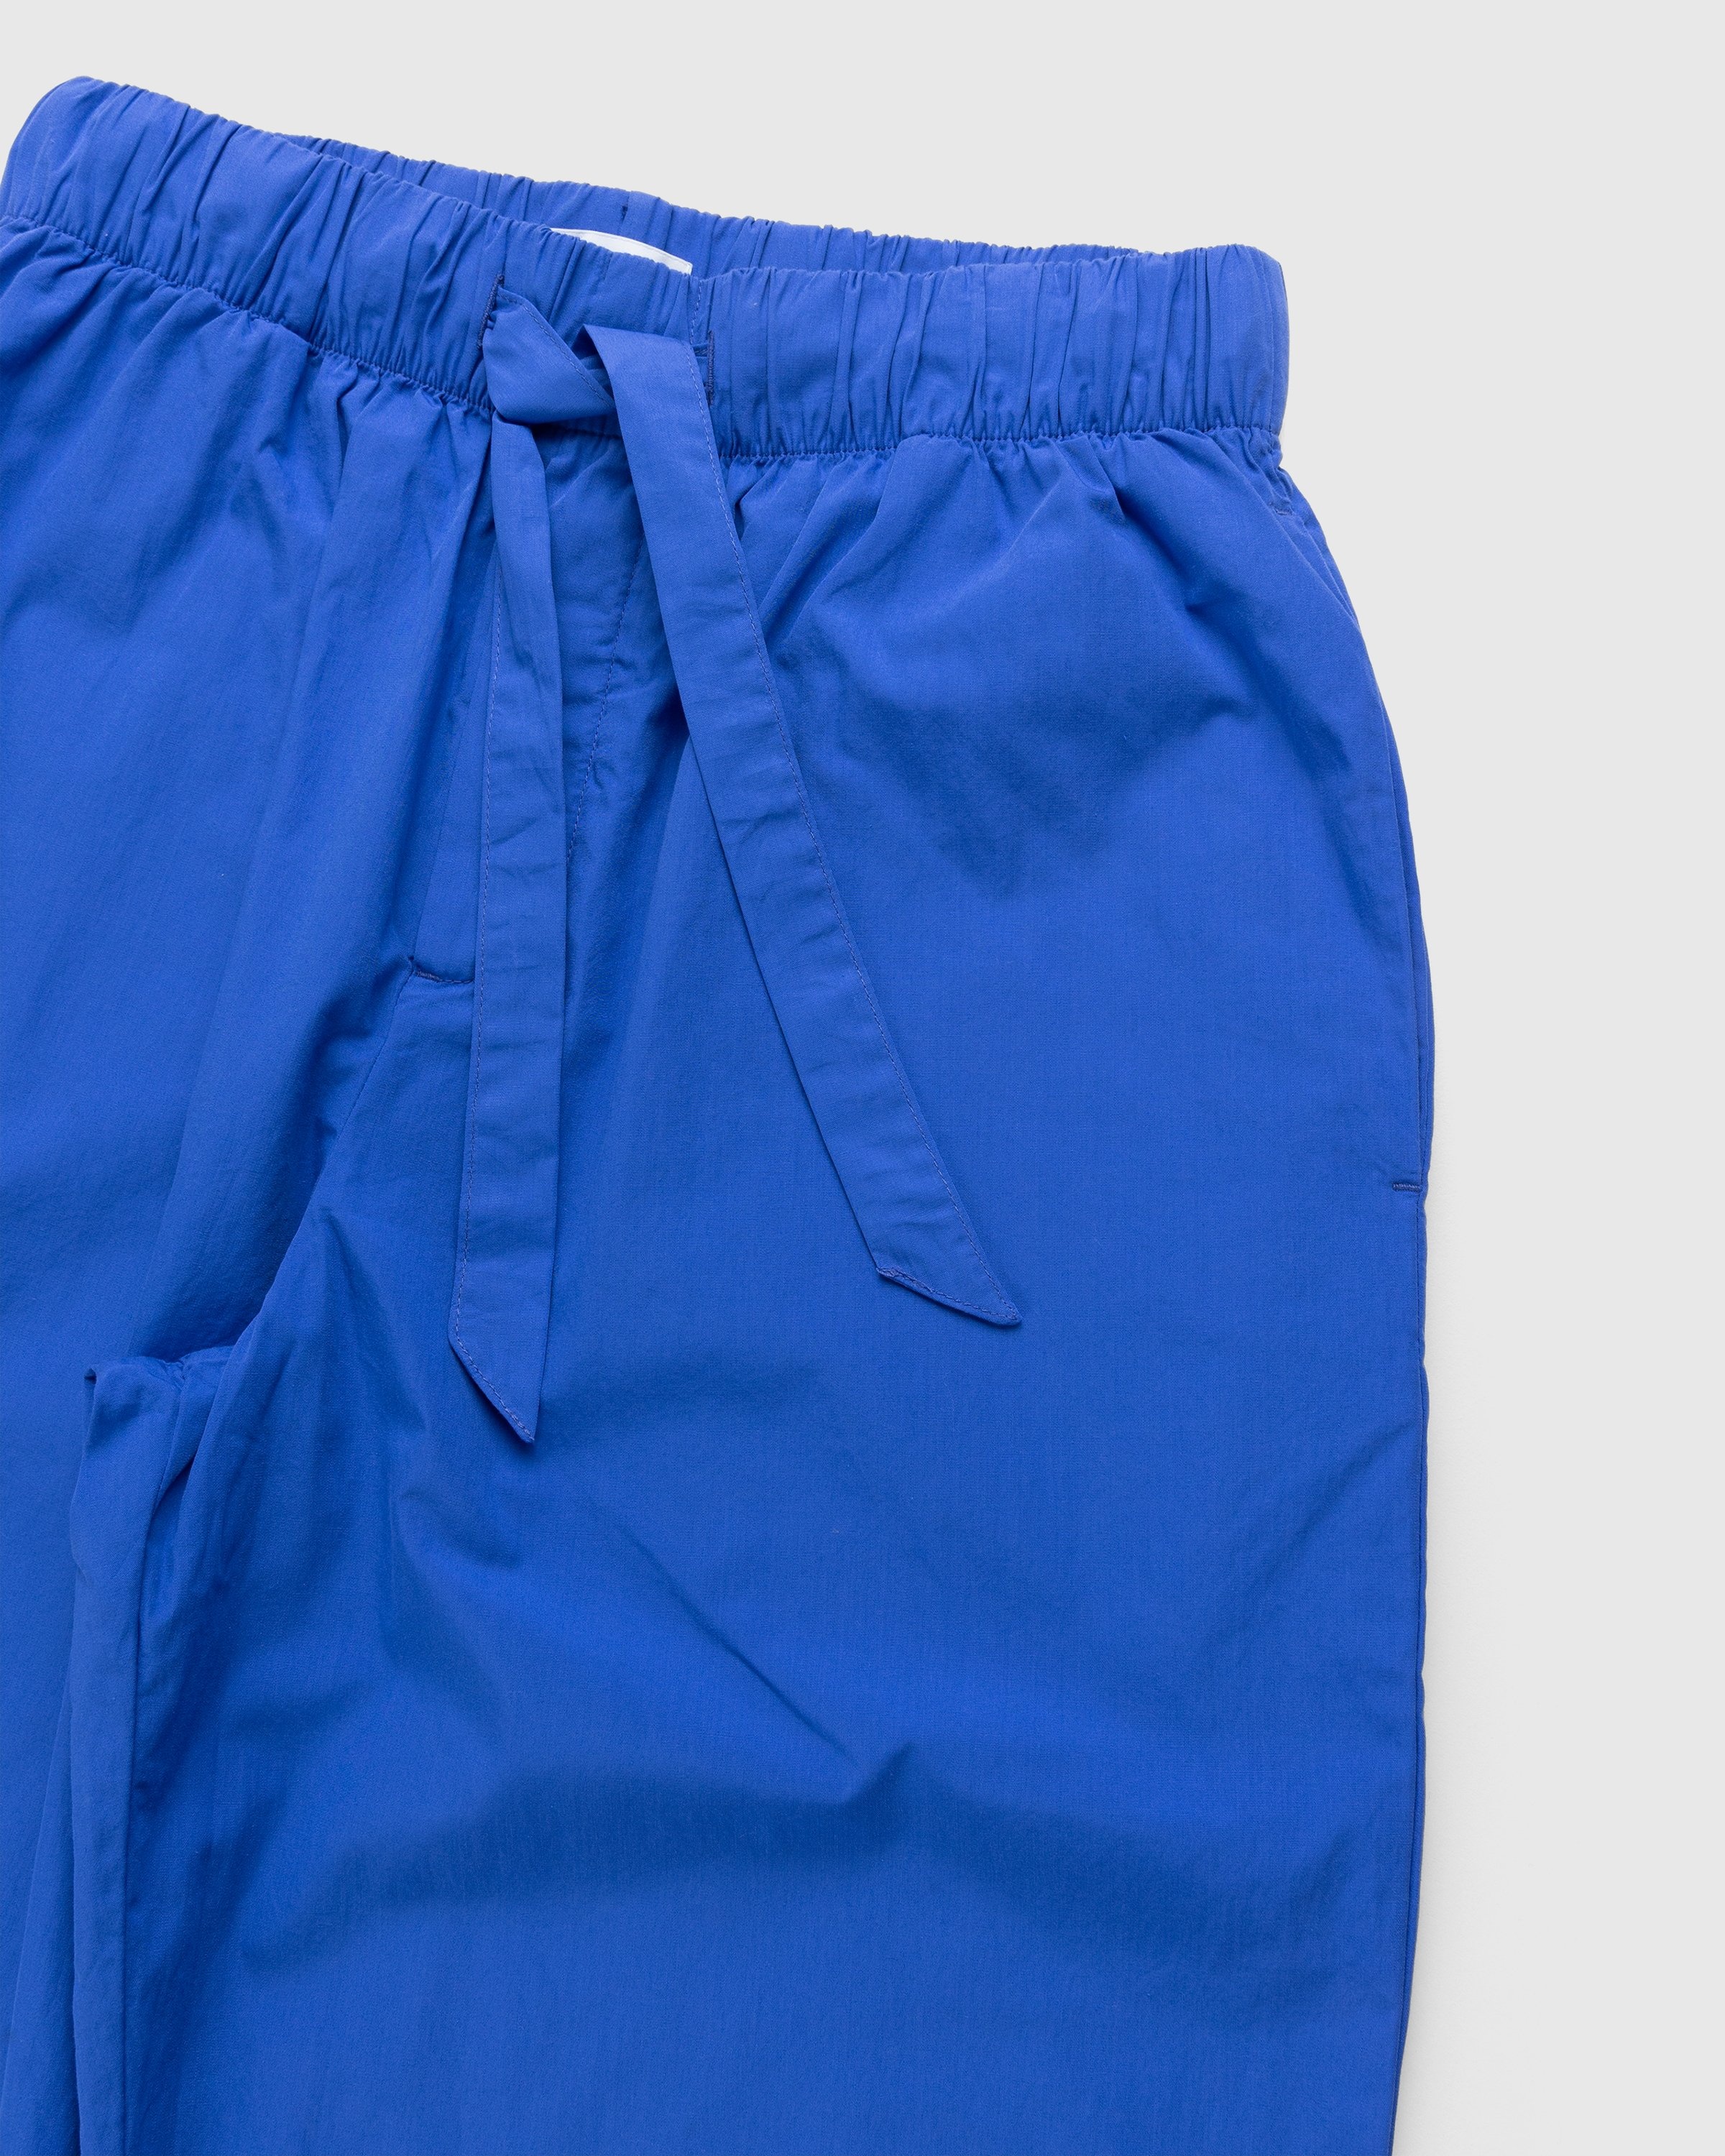 Tekla – Cotton Poplin Pyjamas Pants Royal Blue - Pyjamas - Blue - Image 4